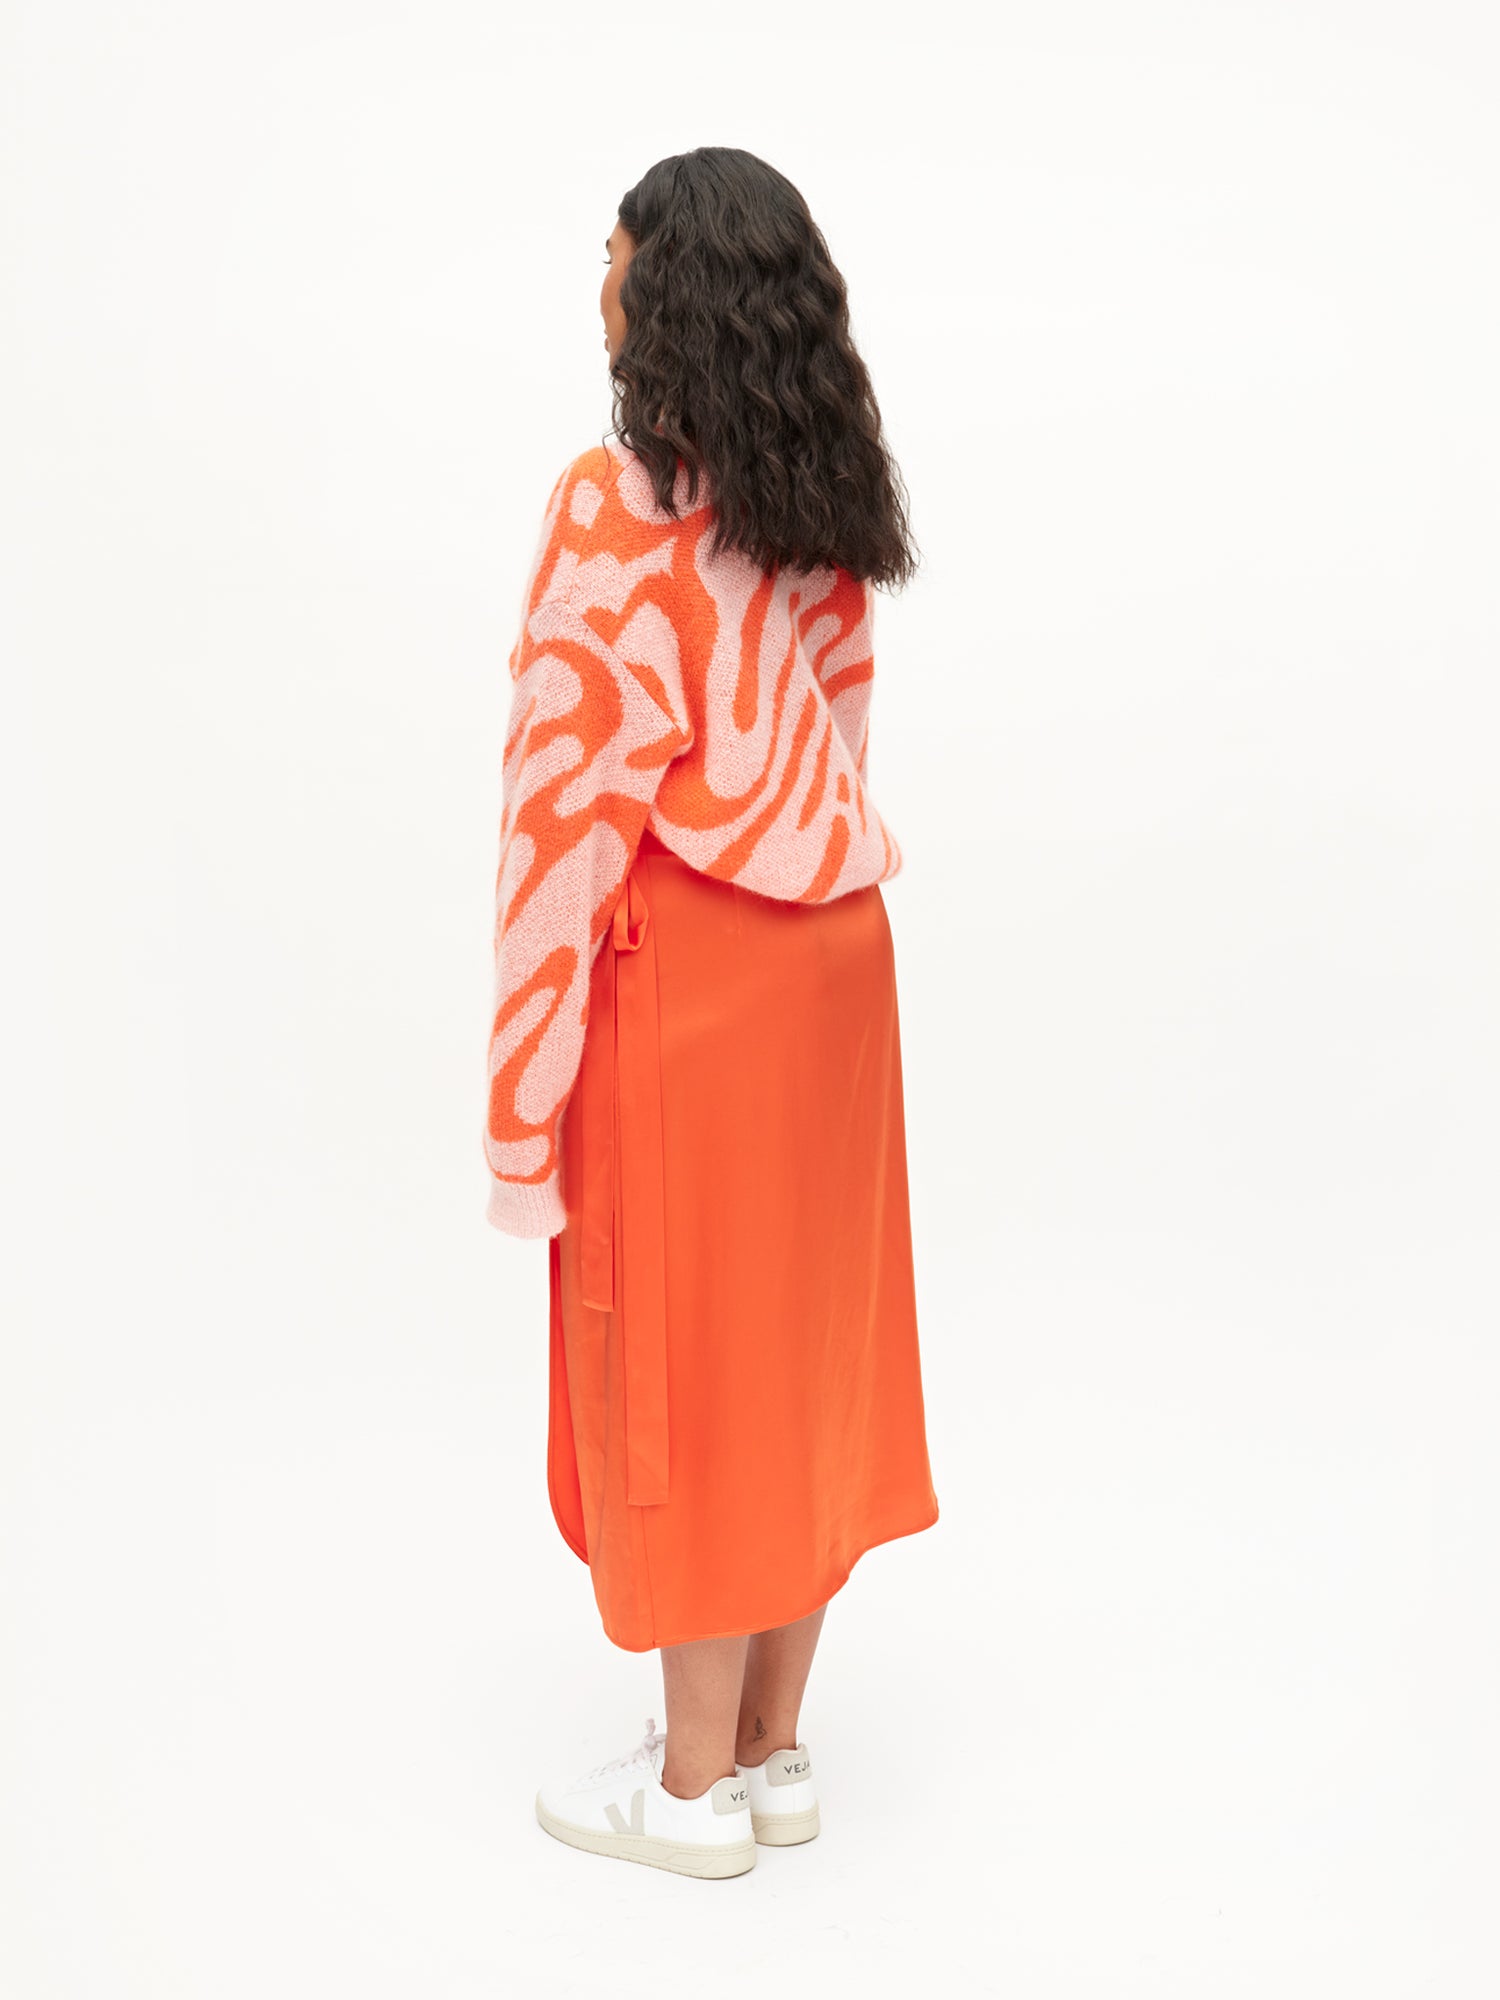 Rowan Skirt, Vibrant Orange